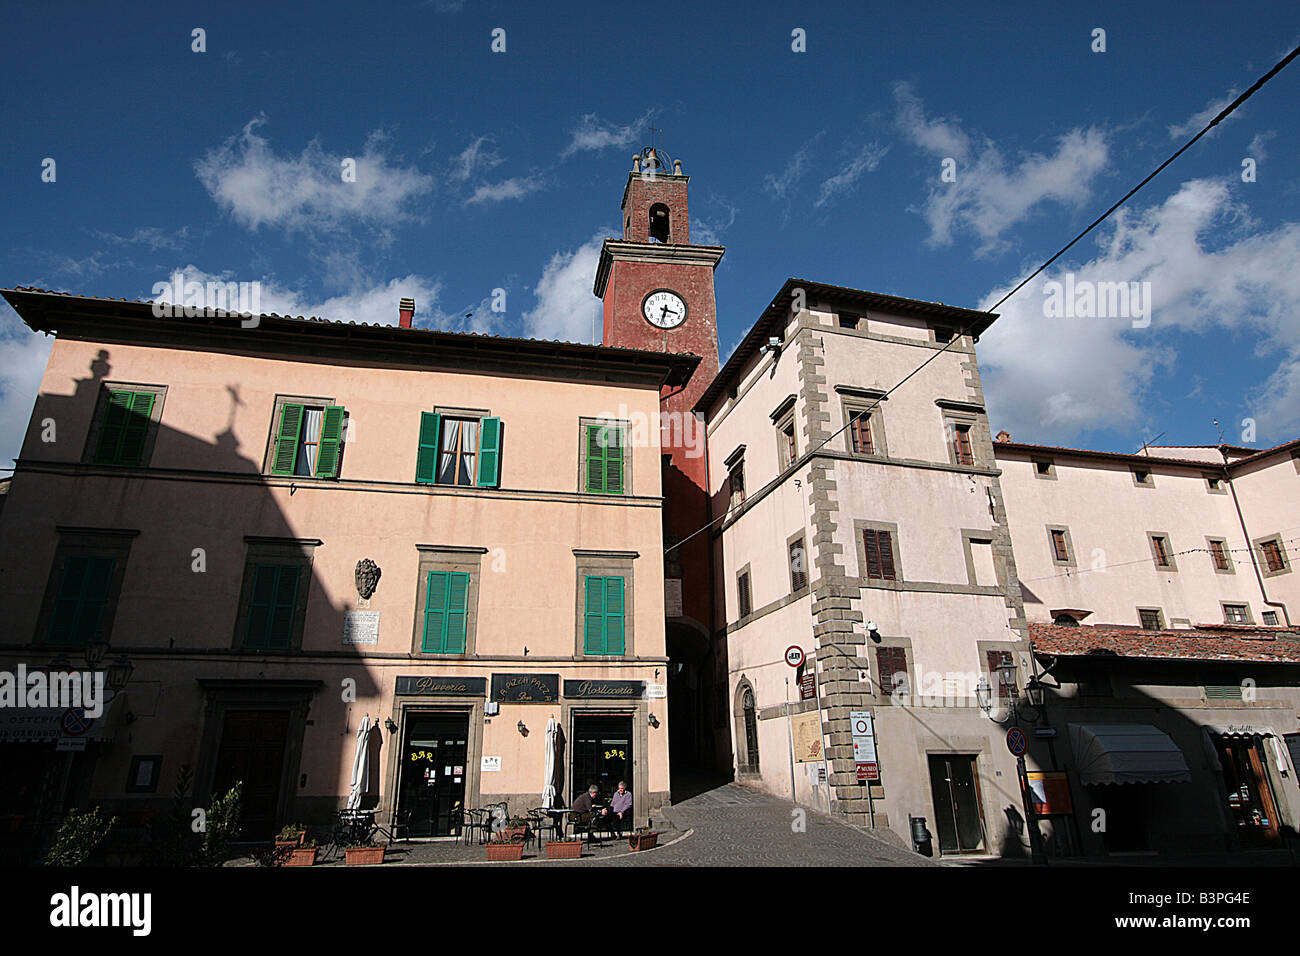 Madonna square with Porta dell'Orologio, Castel del Piano, Monte Amiata area, Tuscany, Italy Stock Photo